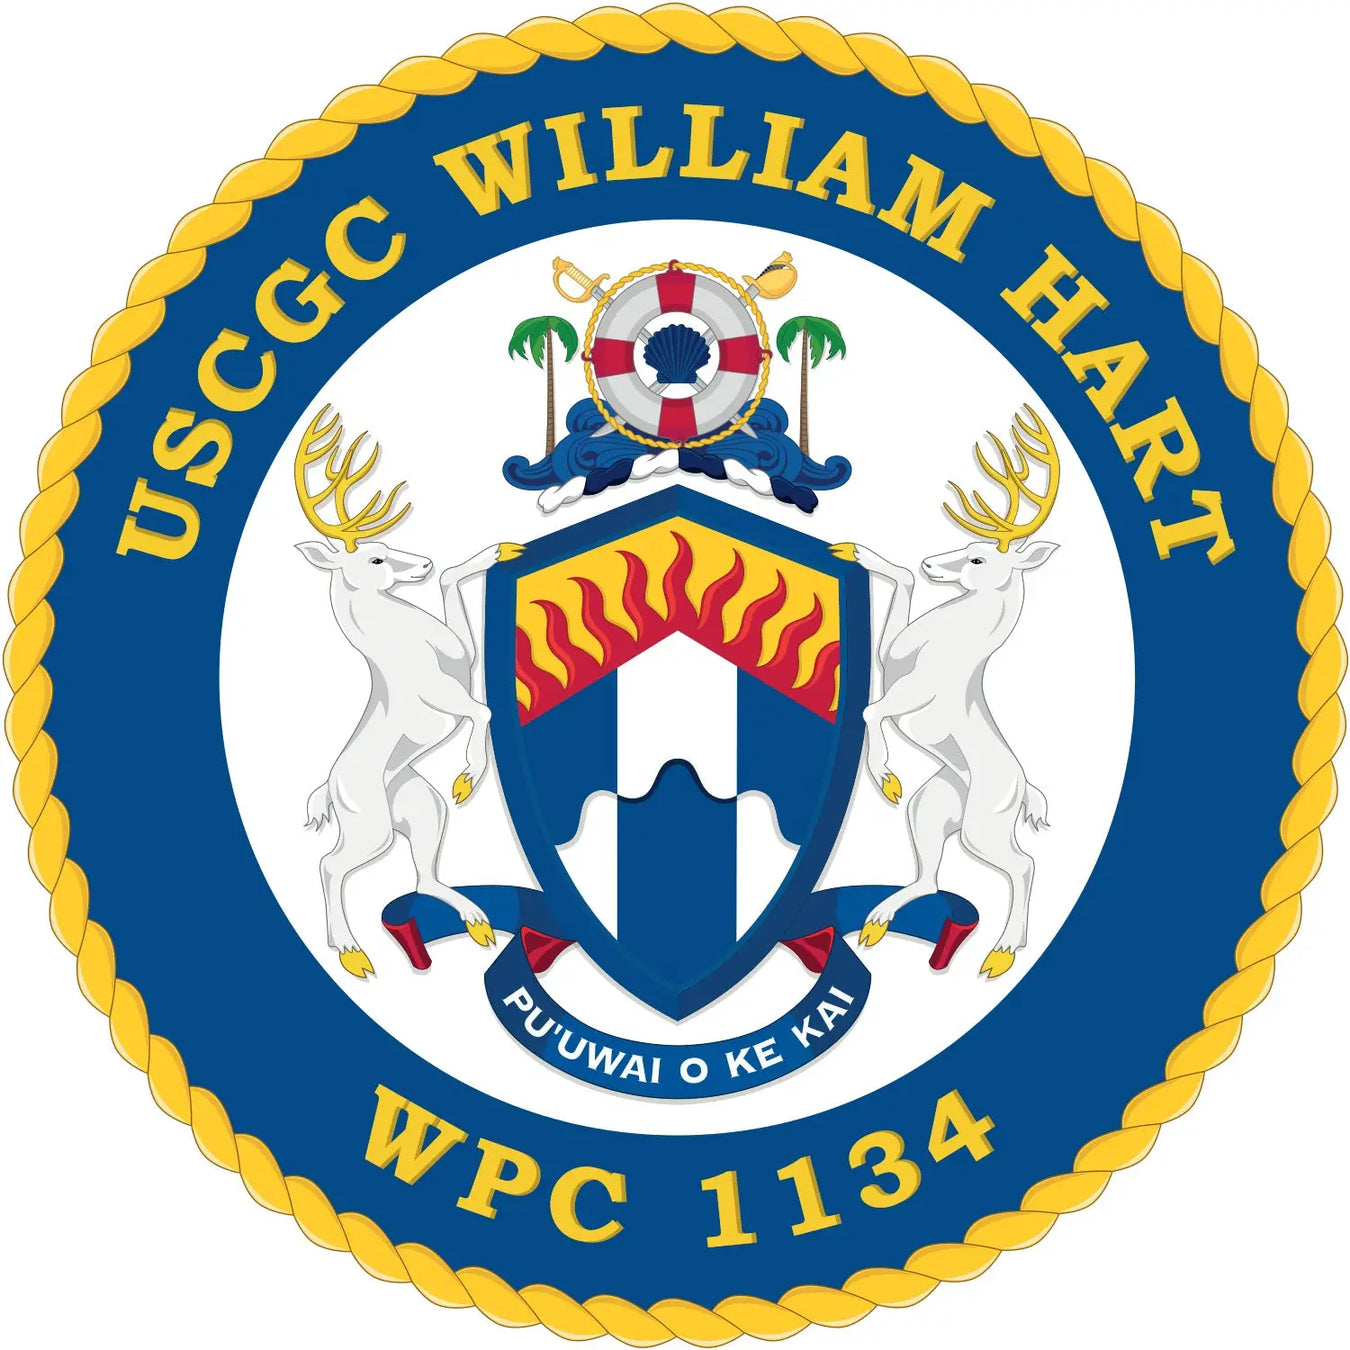 USCGC William Hart (WPC-1134)